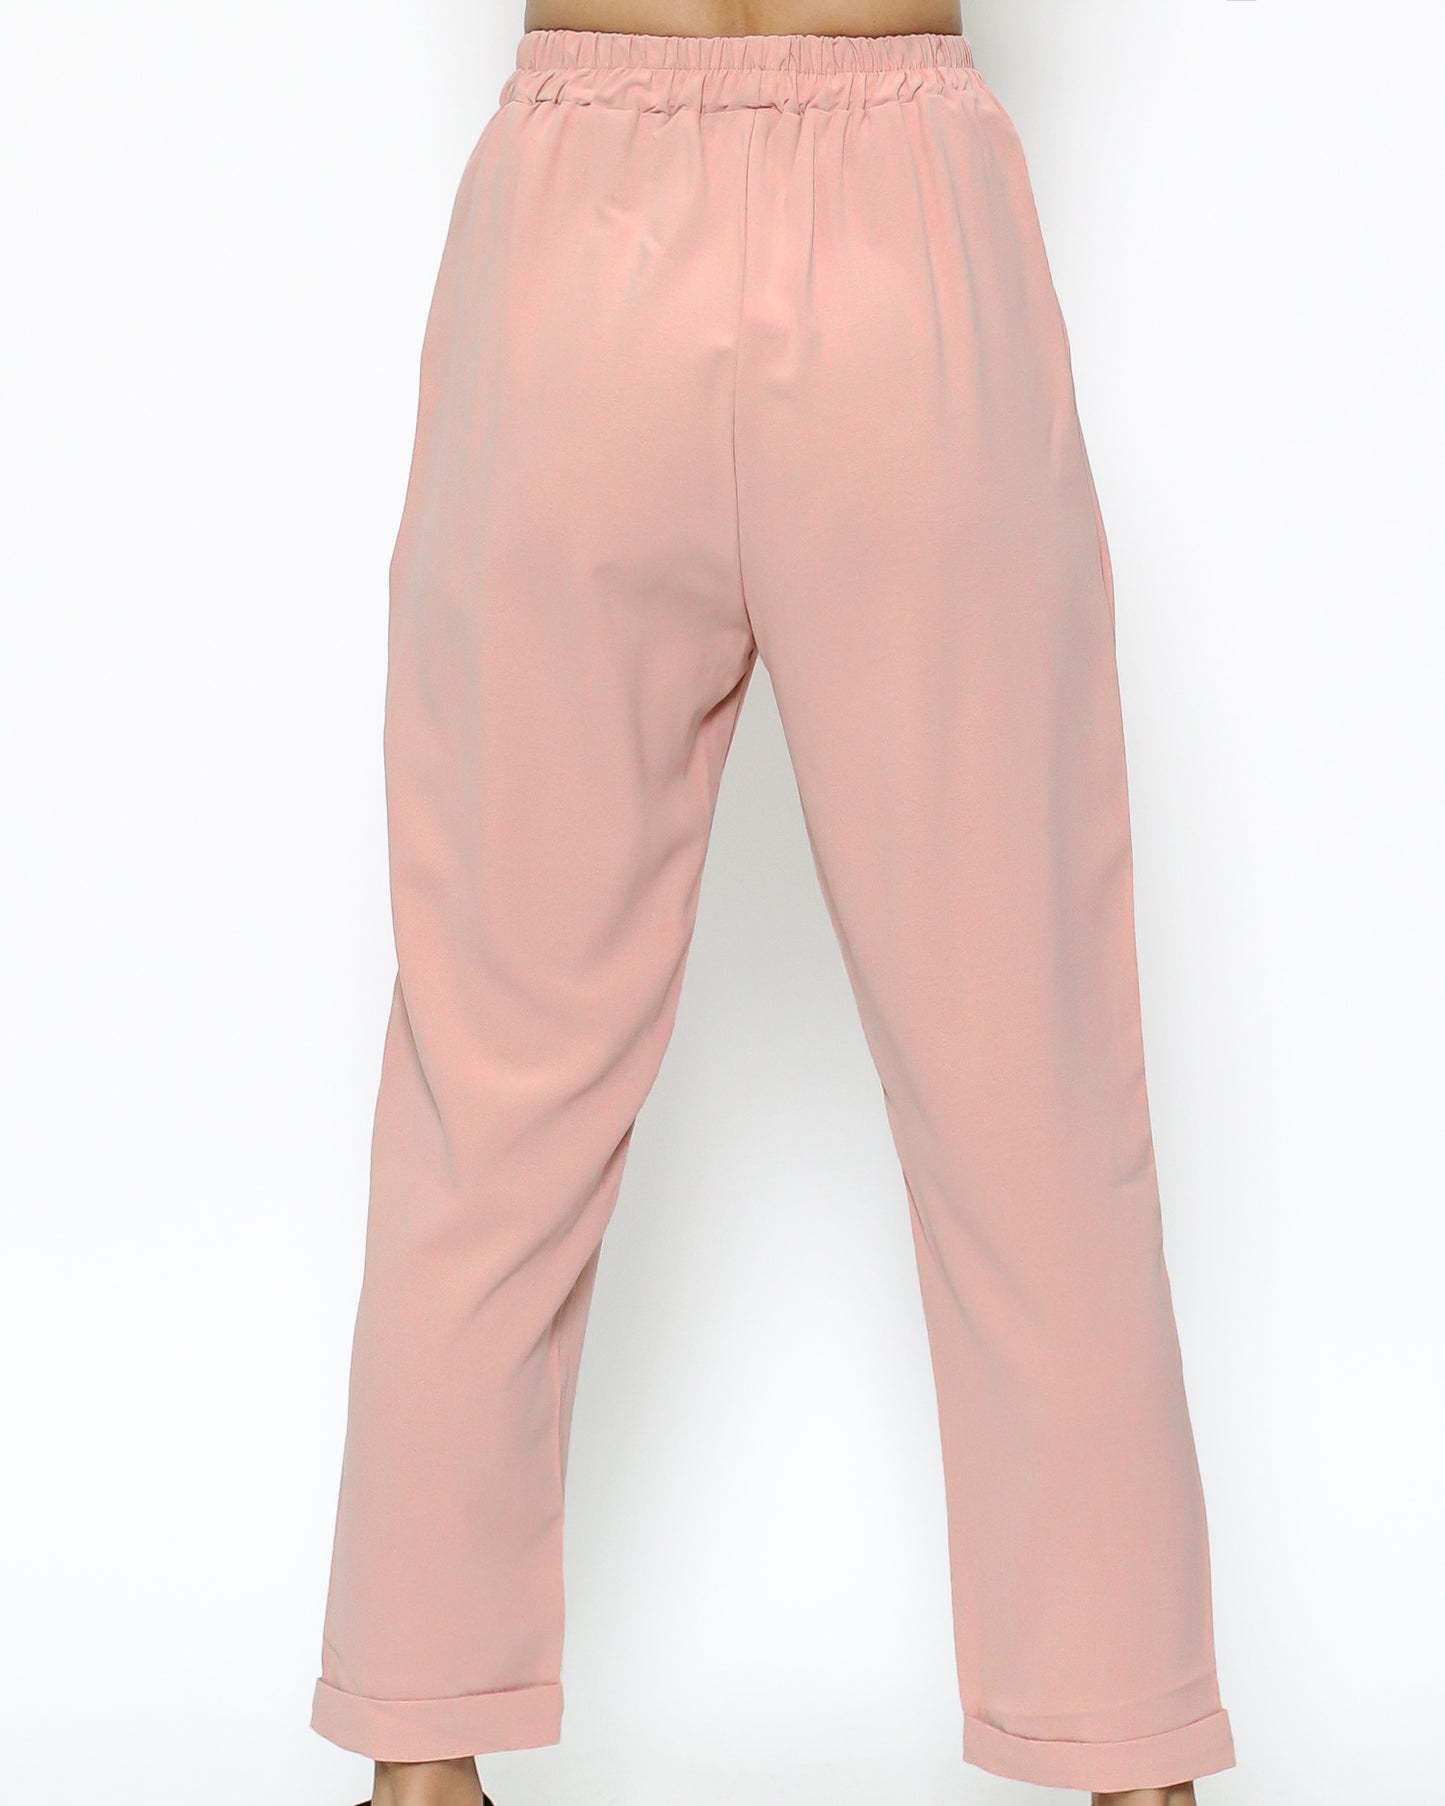 粉色雪紡西裝外套和褲子套裝 *預購*